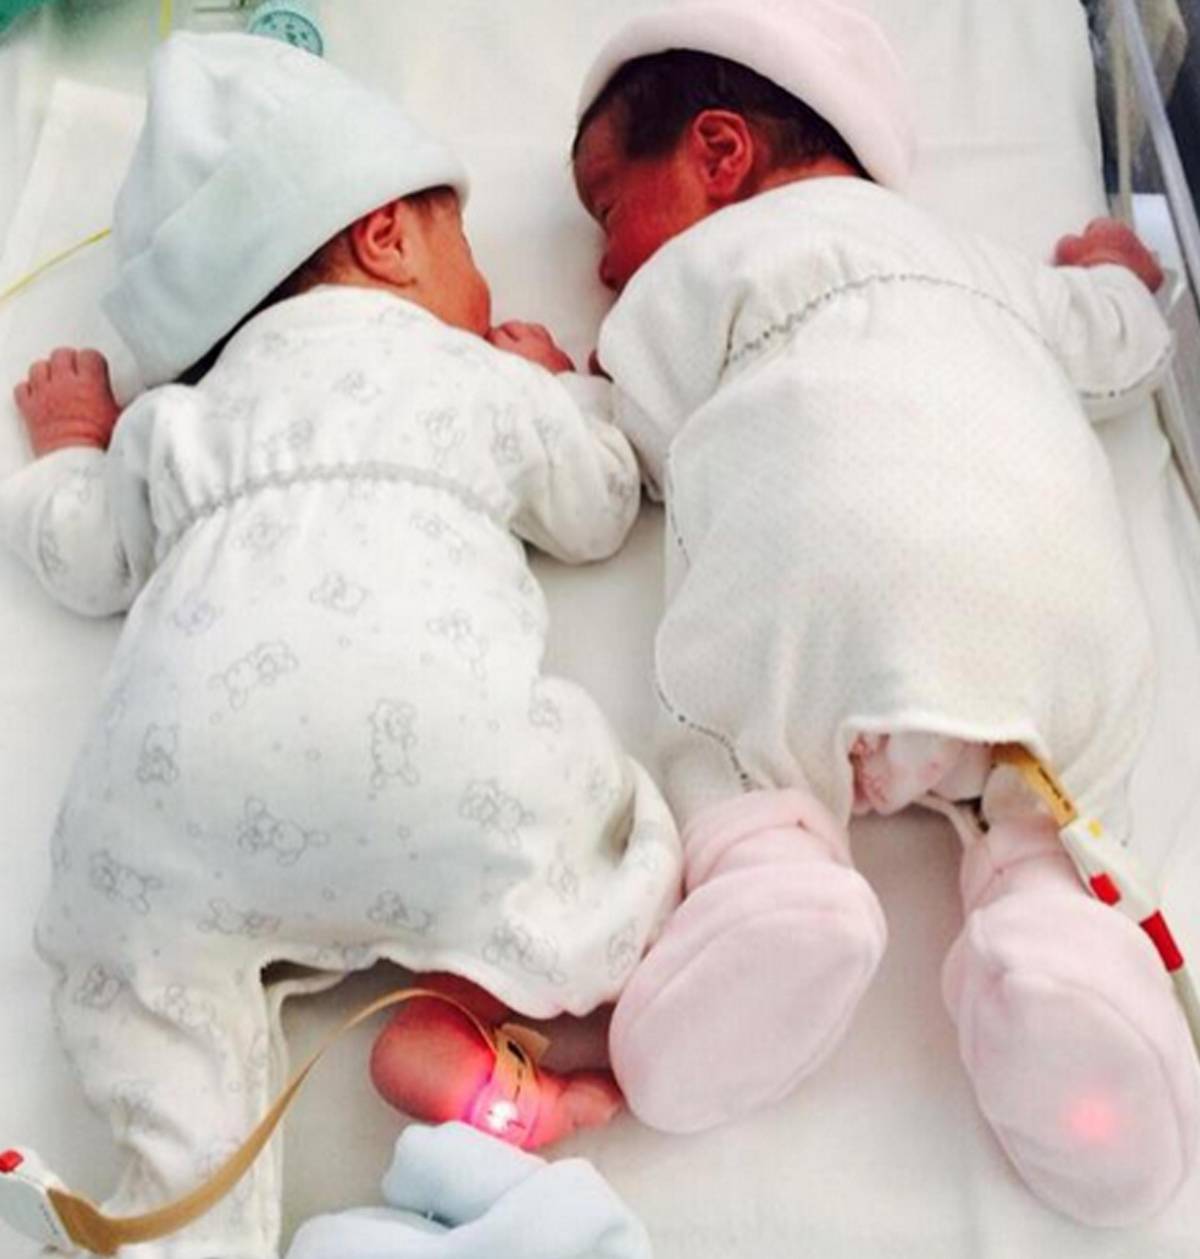 La Lorenzin pubblica  foto dei suoi gemelli:  pioggia di insulti sui social 